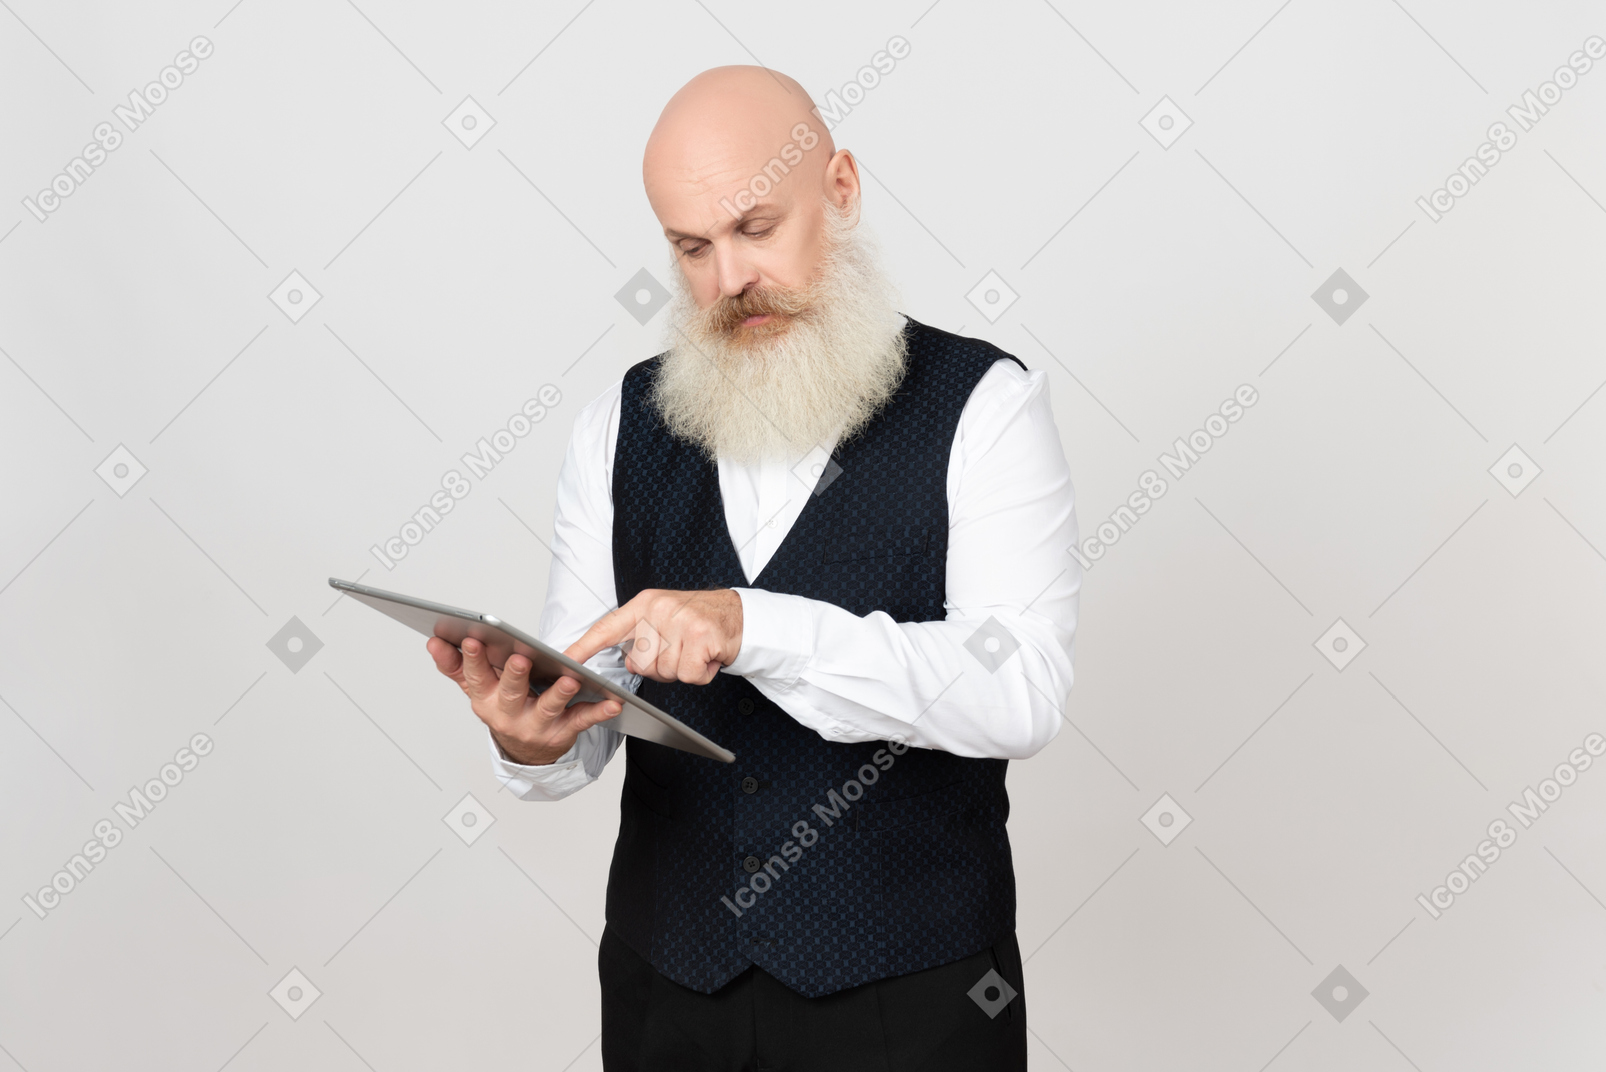 Aged man focused on using ipad